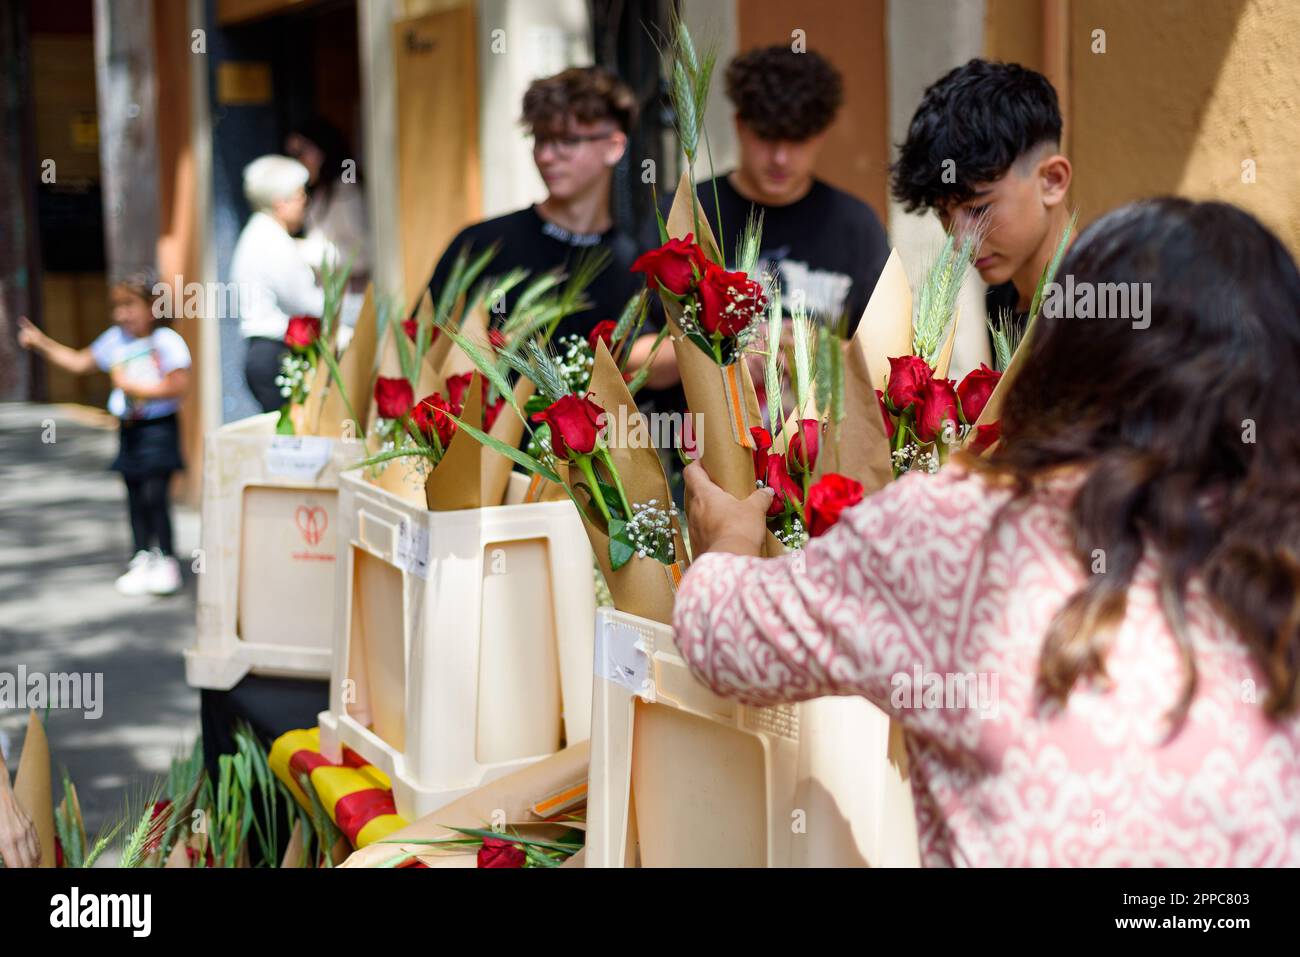 Barcelone, Espagne. 23rd avril 2023. Une femme est vue acheter des roses rouges dans une cabine pendant la fête catalane traditionnelle du jour de Saint George. Ce jour-là, connu sous le nom de « jour de Saint-Georges » (Diada de Sant Jordi en catalan), l'amour et la littérature sont célébrés par la vente de livres et de roses rouges dans tout le pays. Depuis l'année 1997, le slogan officiel de ce jour a été "Une rose pour l'amour, et un livre pour toujours". Crédit : SOPA Images Limited/Alamy Live News Banque D'Images